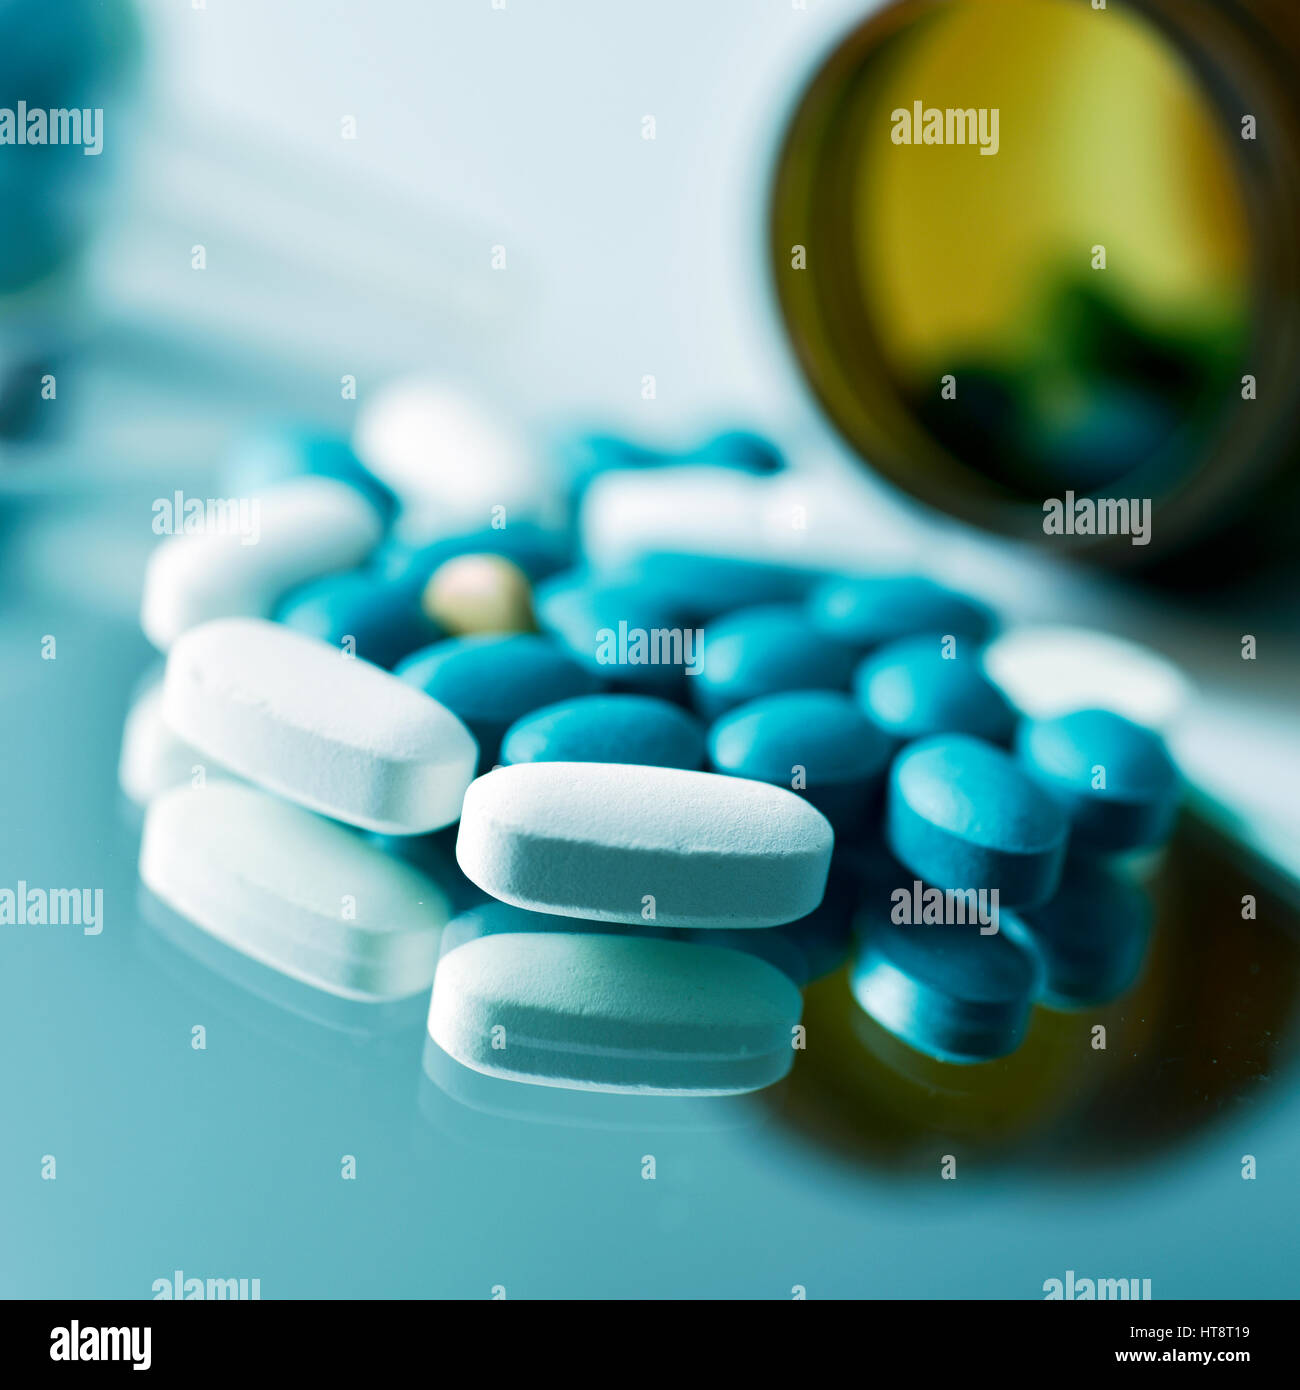 Primo piano di molte diverse pillole su una superficie riflettente e una bottiglia marrone con le pillole in background Foto Stock